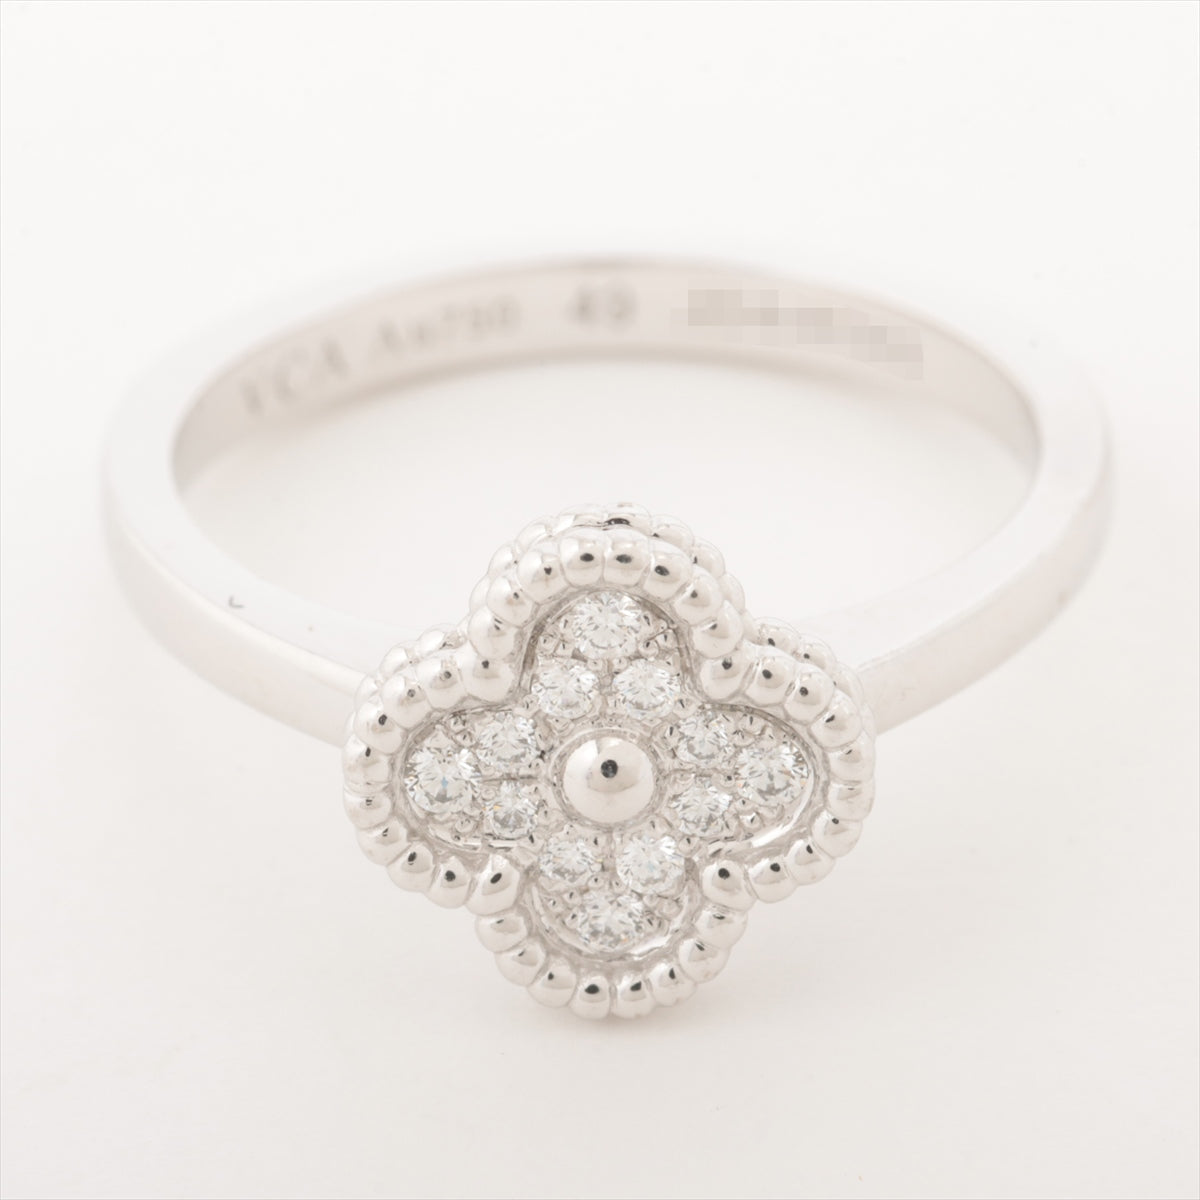 Van Cleef & Arpels Sweet Alhambra diamond rings 750(WG) 3.3g 49 VCARO85849